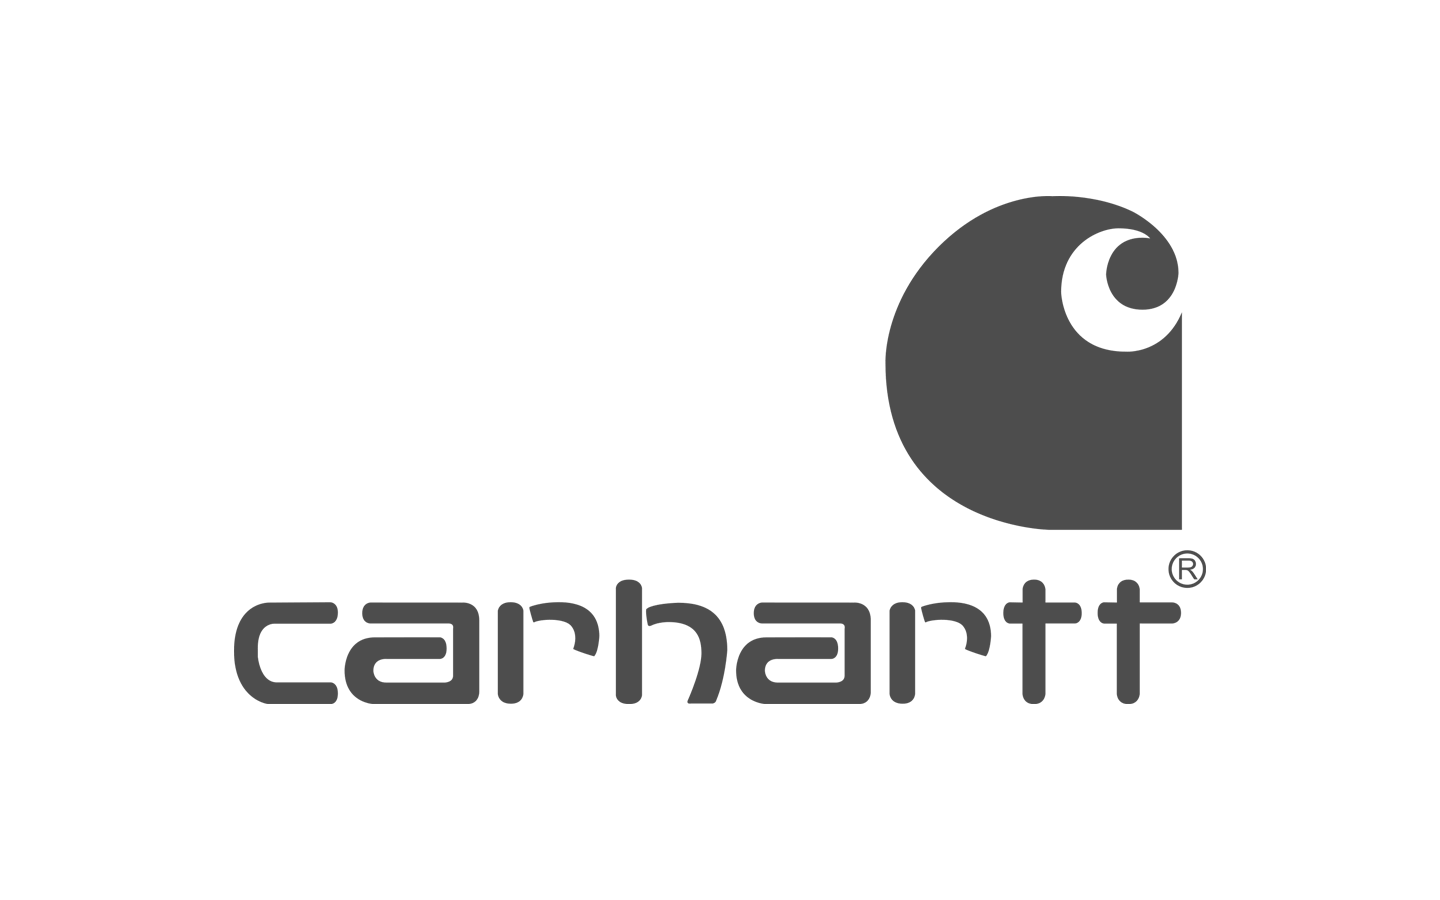 Carhartt Logo Wallpapers - Top Free Carhartt Logo Backgrounds ...